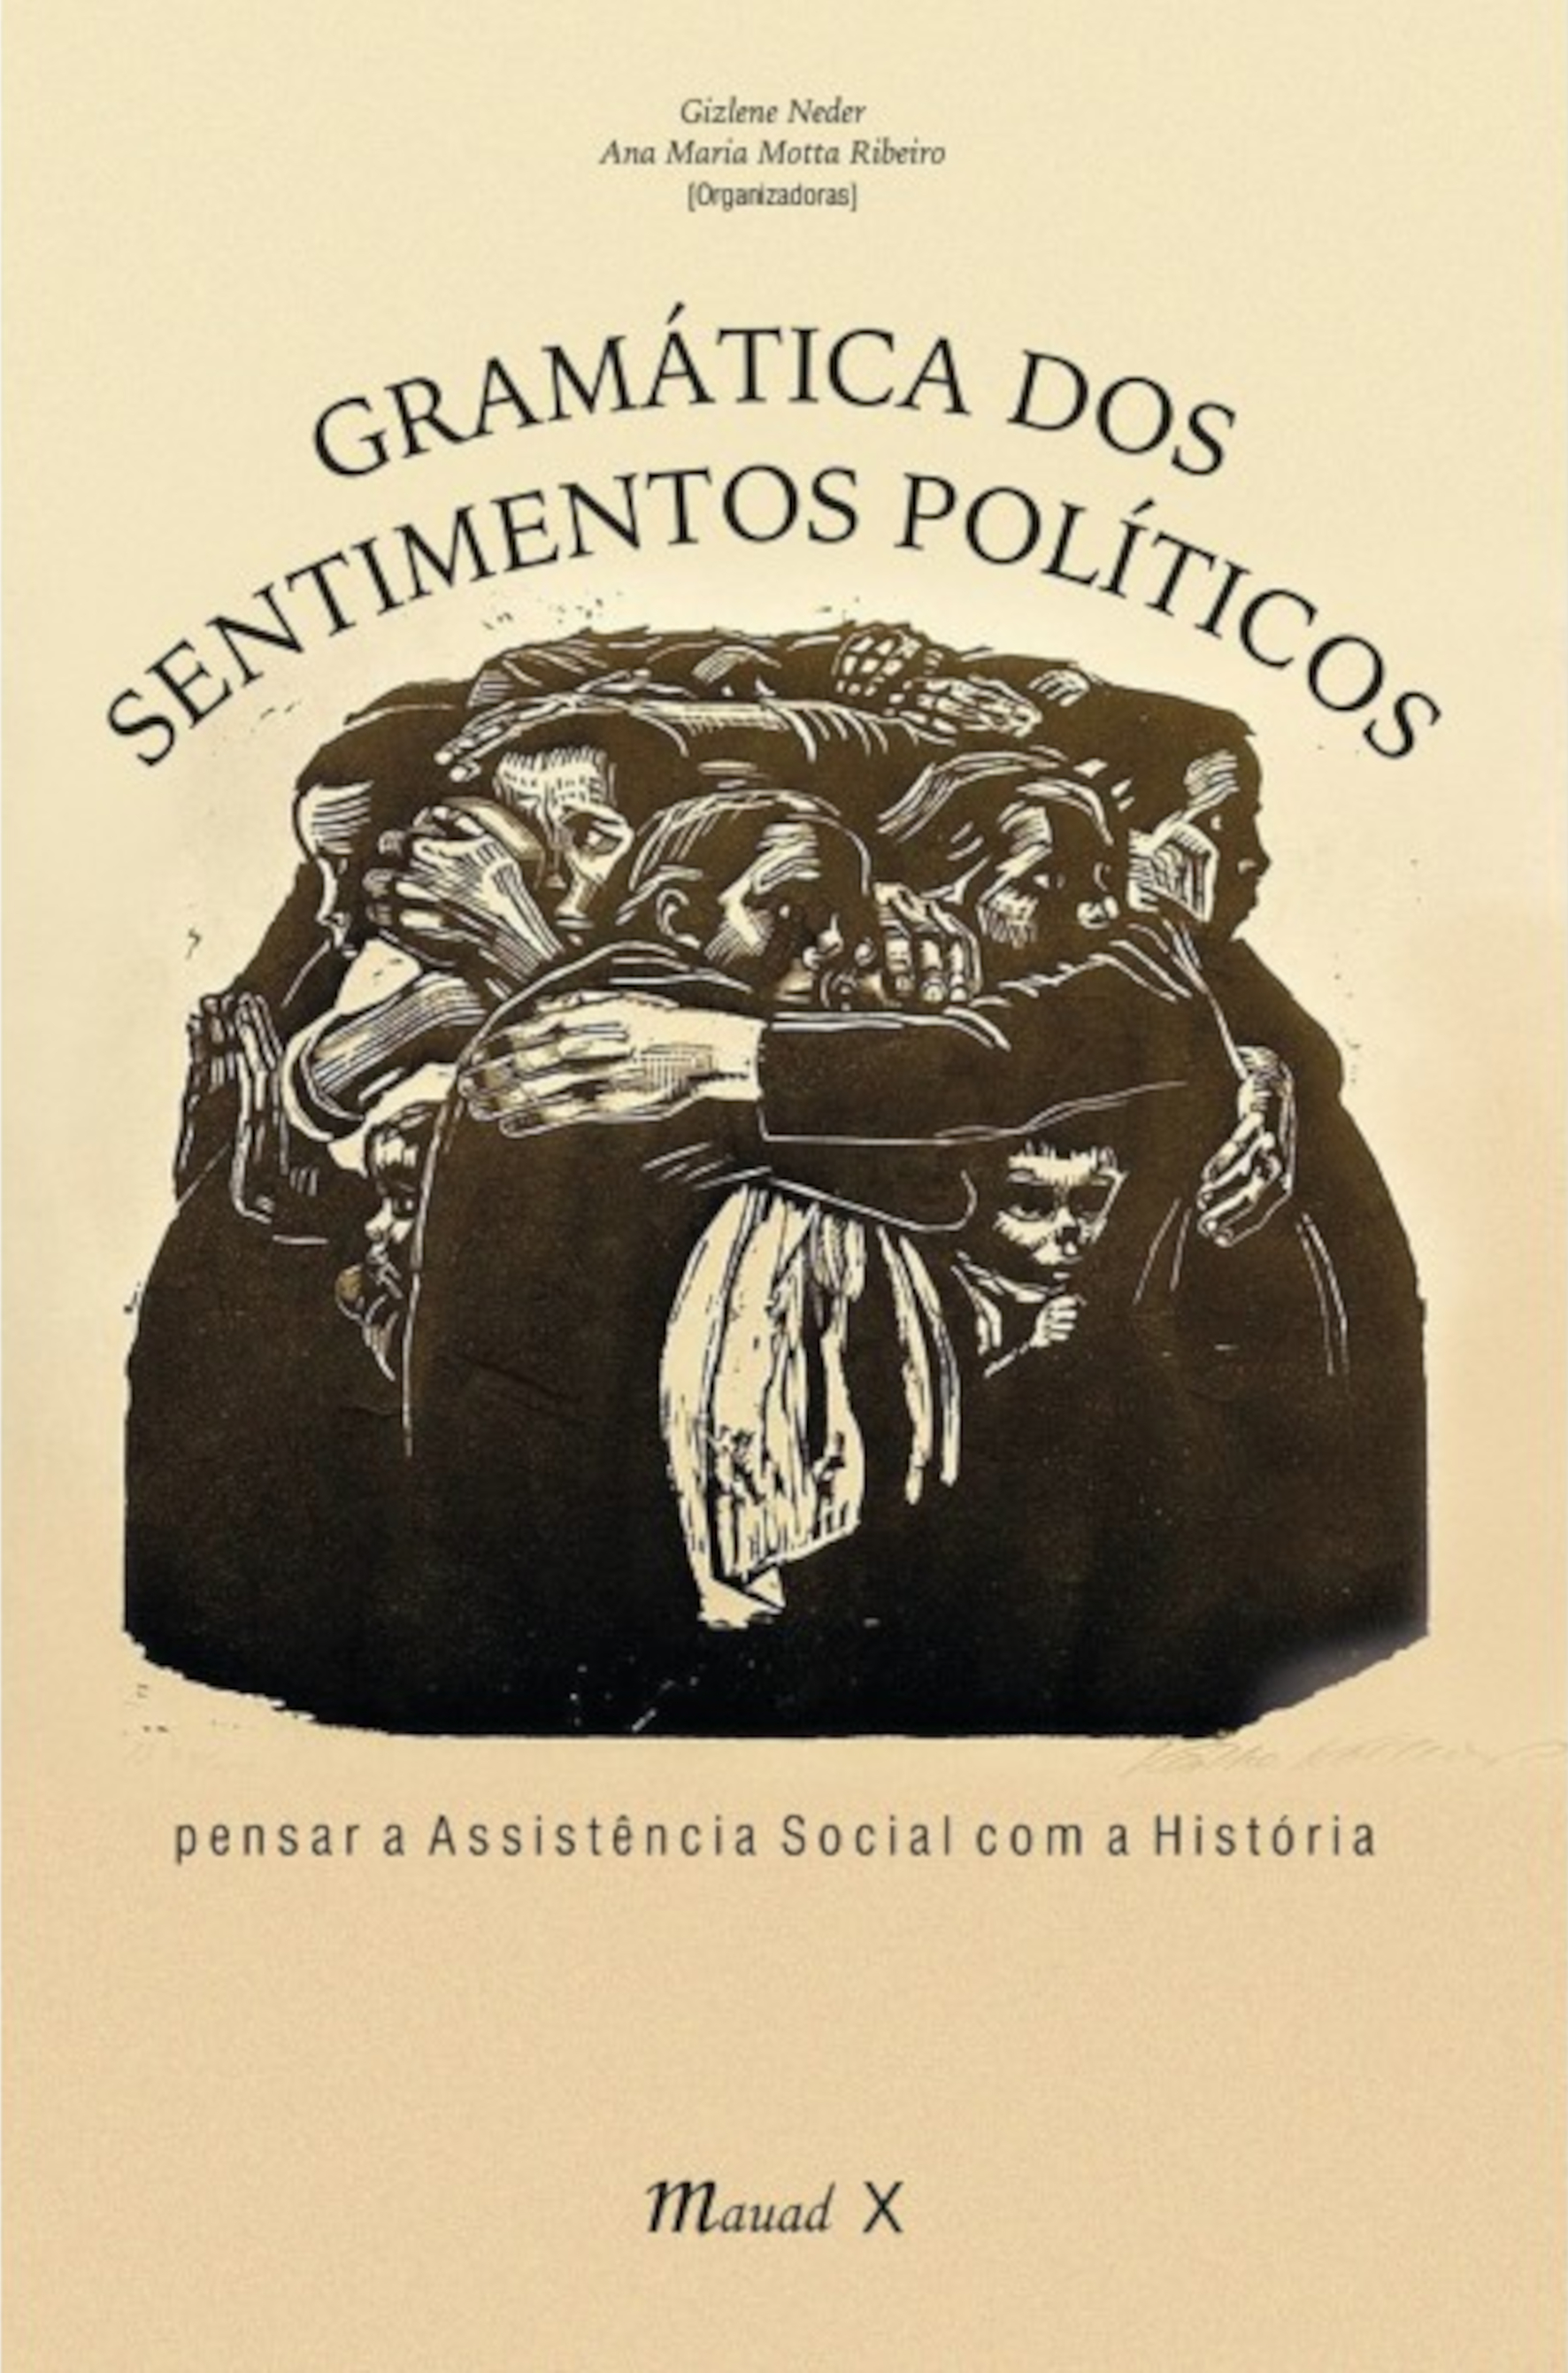 Capa do livro "Gramática dos sentimentos políticos